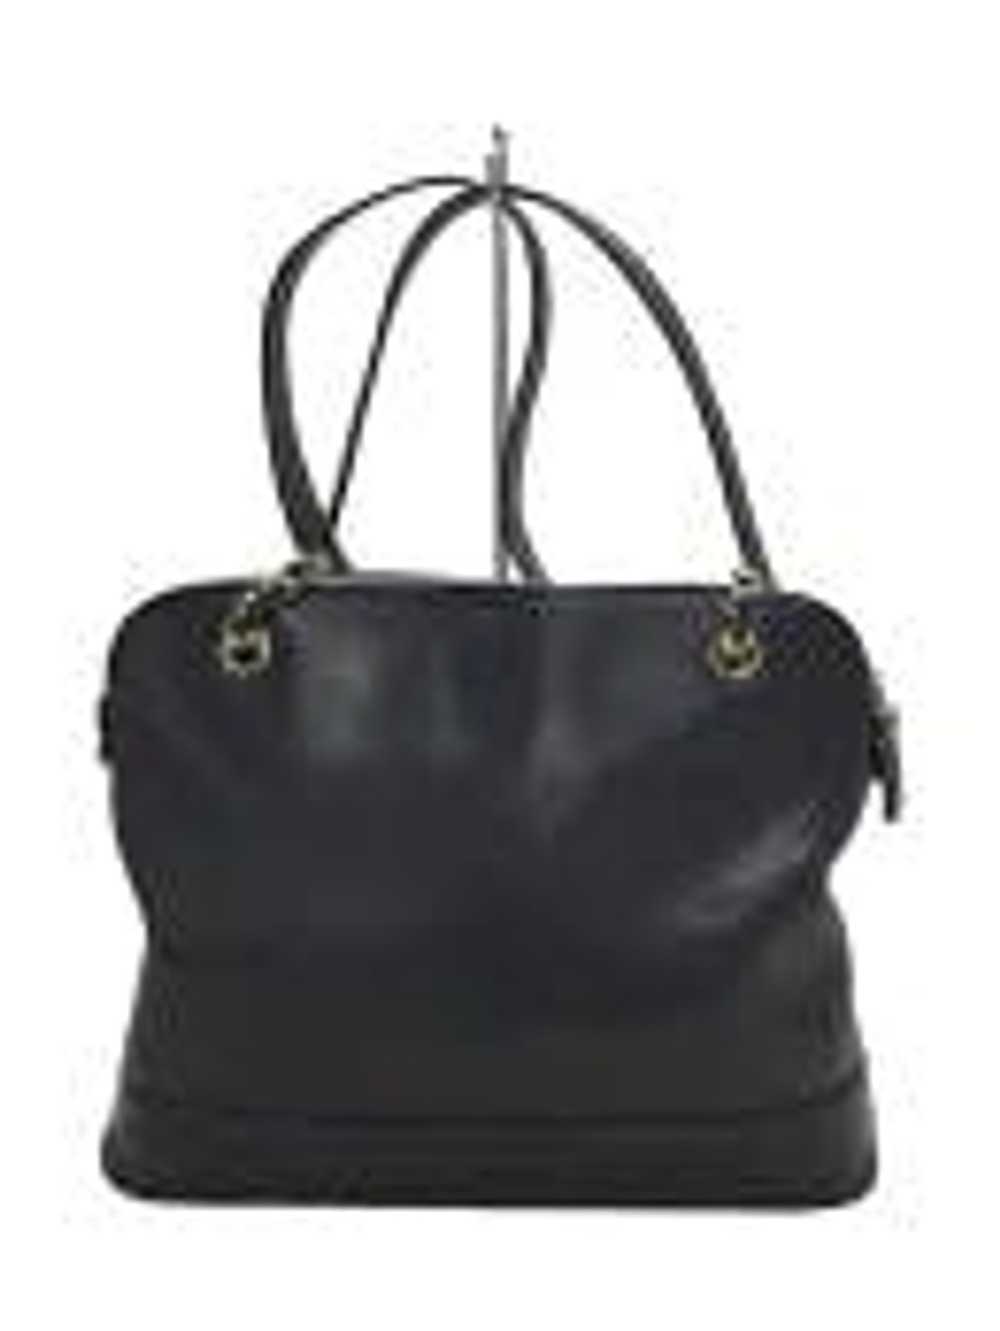 coco chanel crossbody handbag